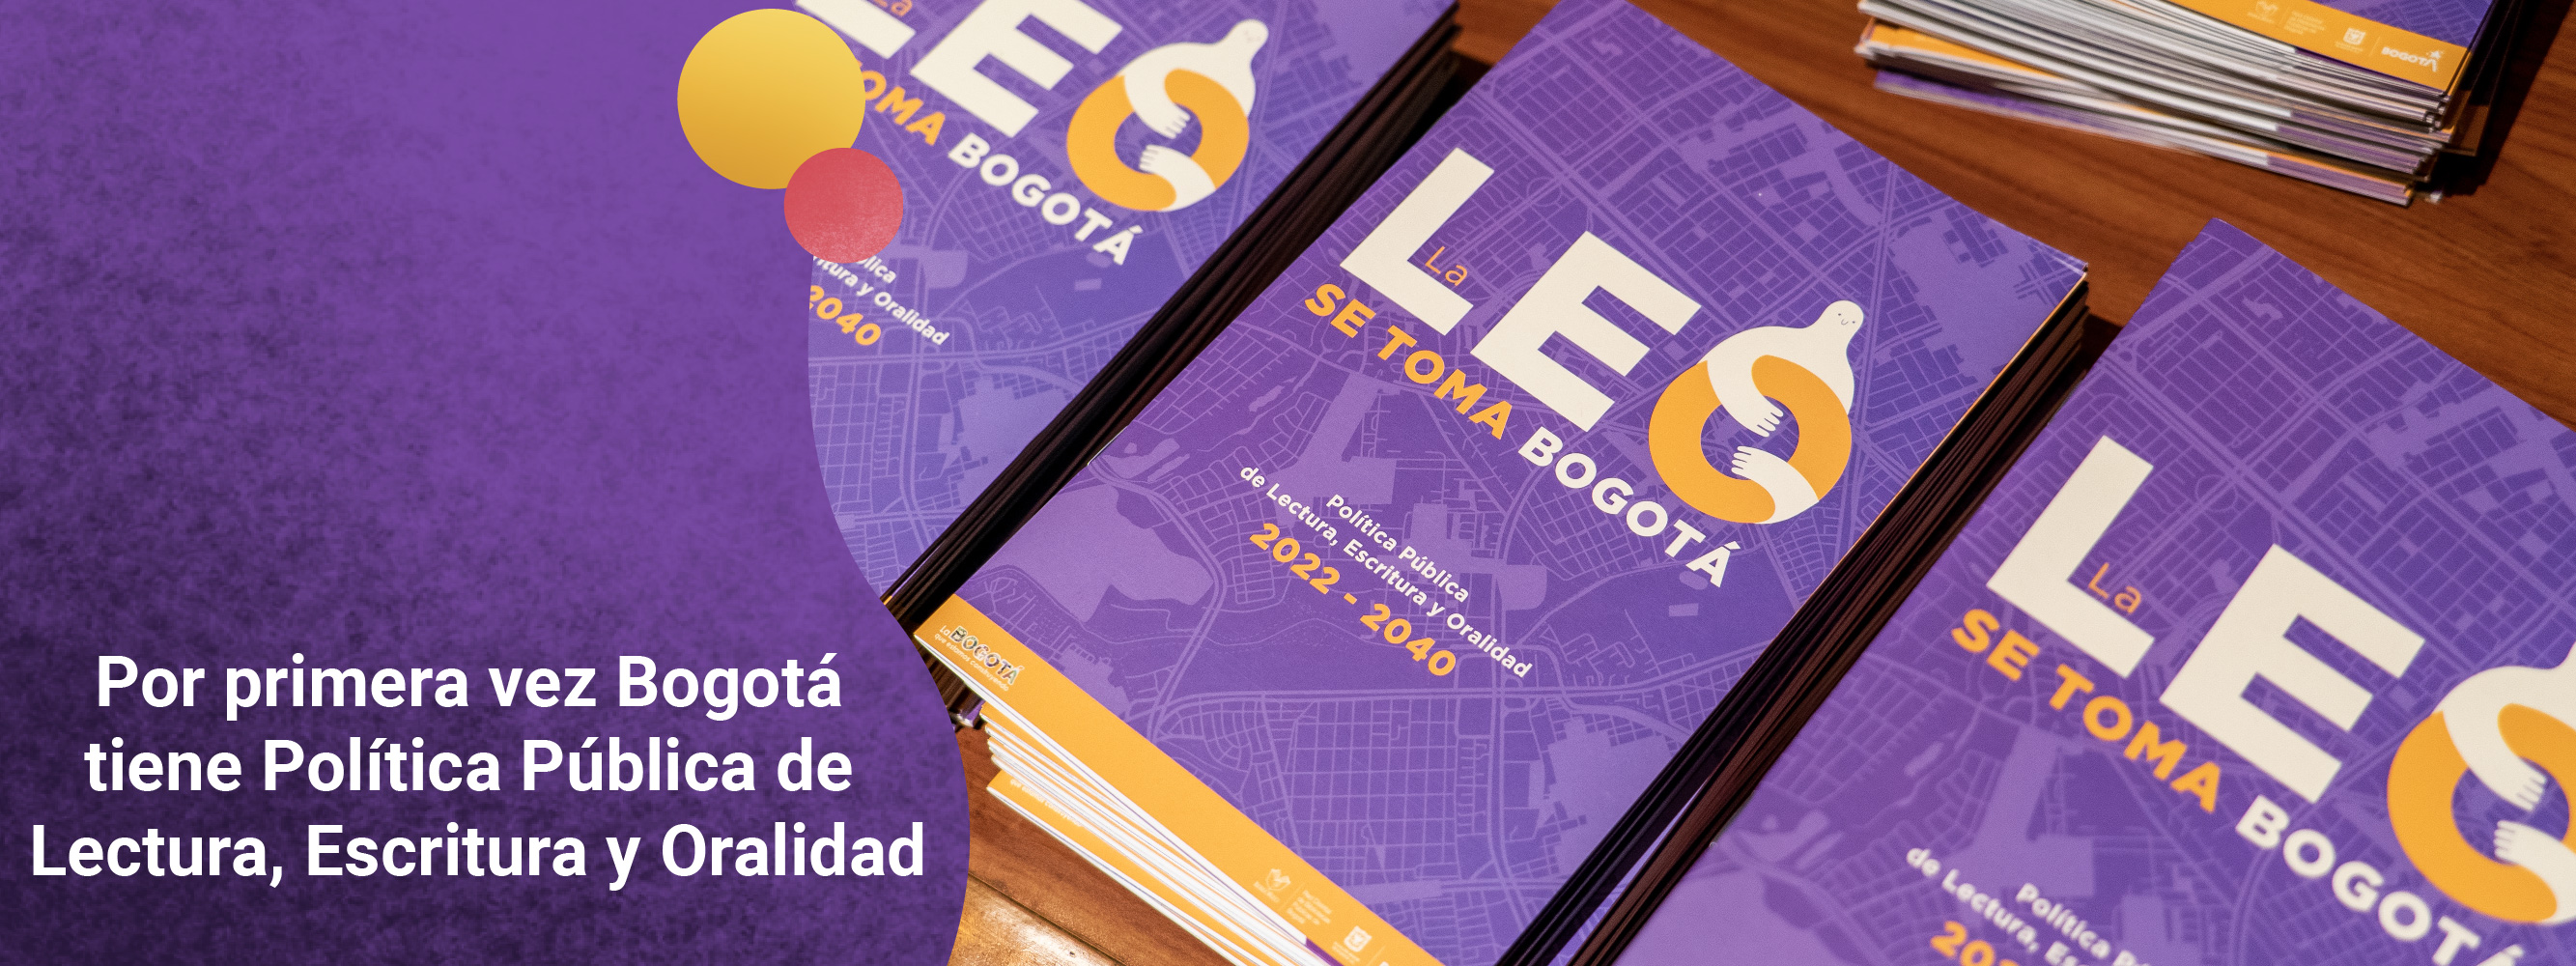 Con una inversión de 428.746 millones de pesos, ‘La Política Pública de Lectura, Escritura y Oralidad’ (La LEO) busca ampliar las oportunidades de acceso de la ciudadanía a espacios y prácticas de la cultura escrita y oral en Bogotá